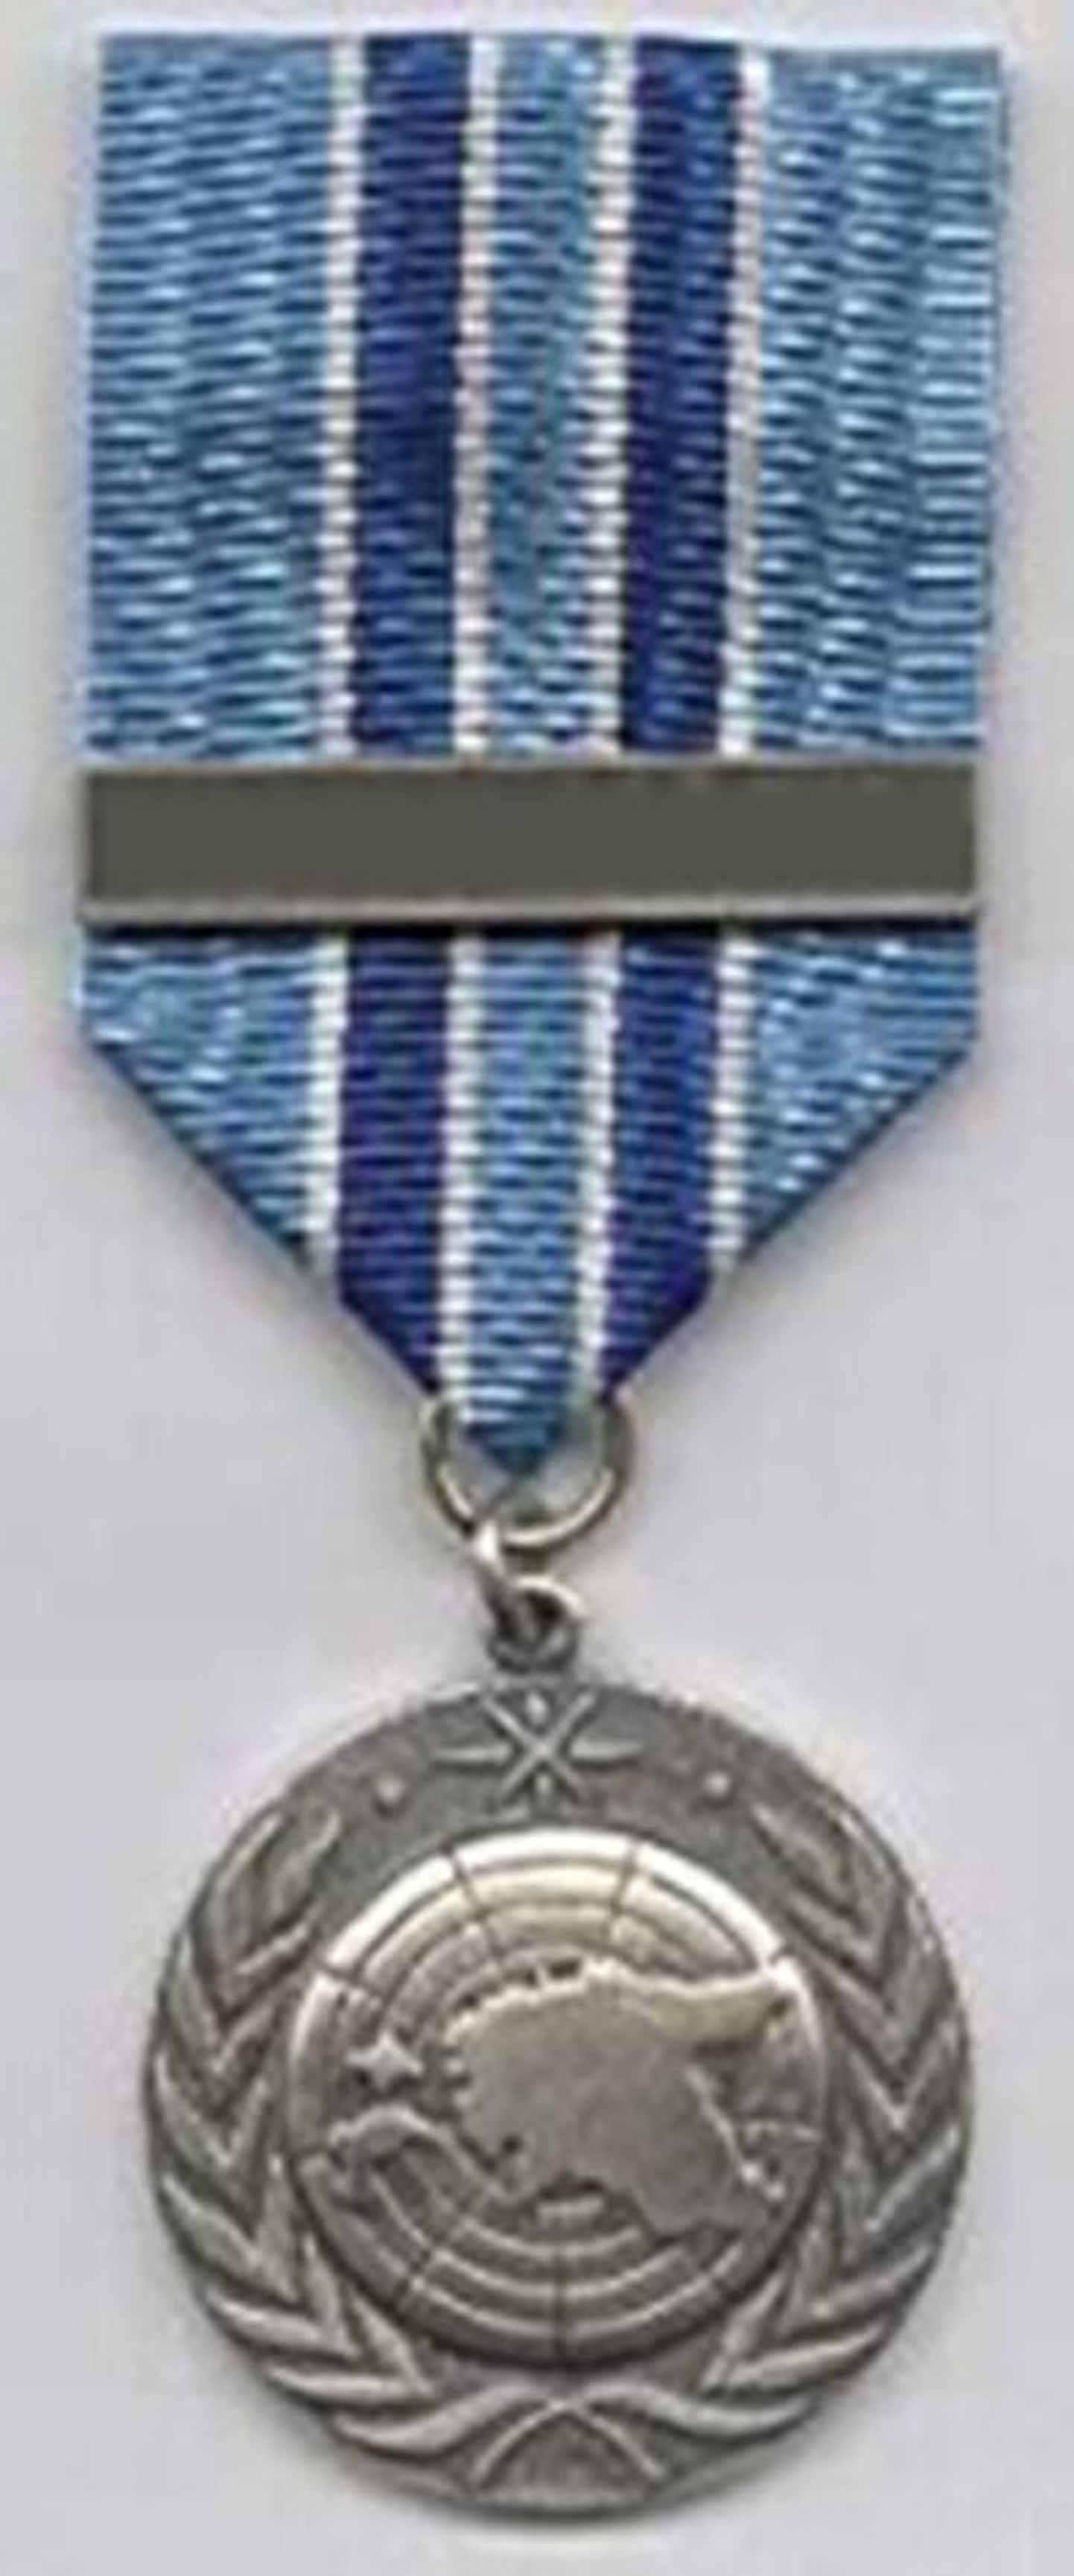 Rahuvalvaja medal